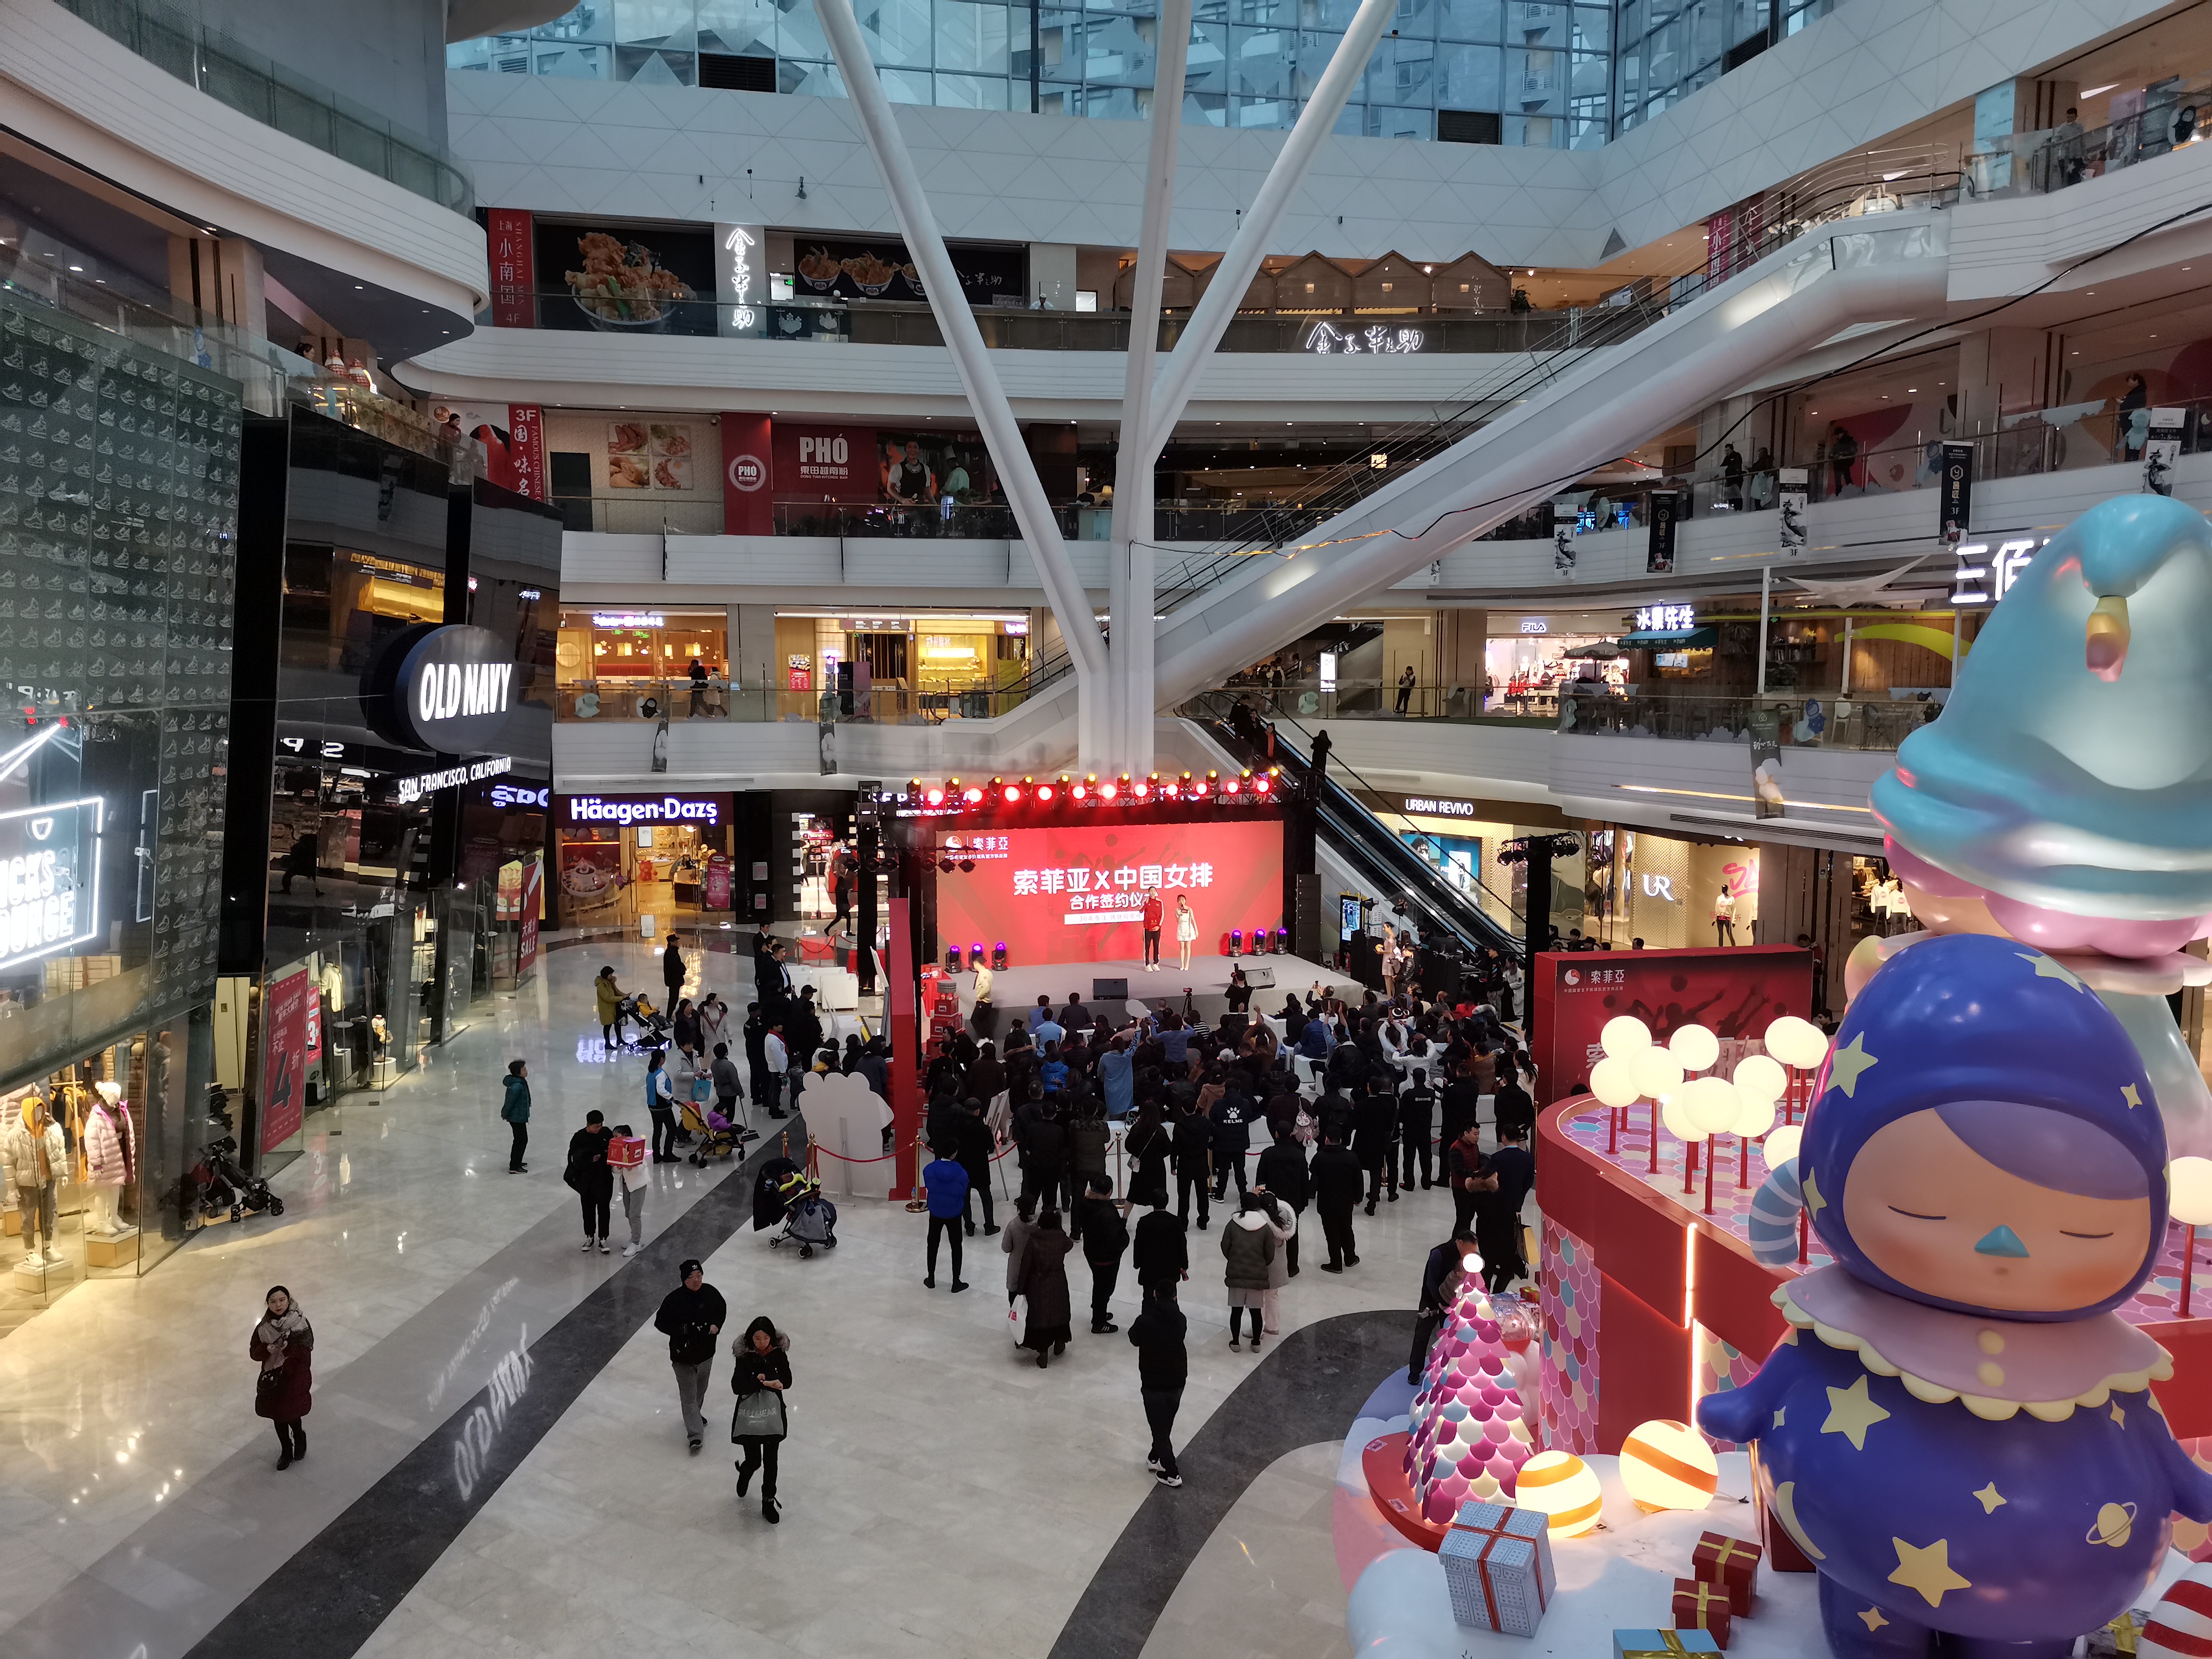 索菲亚家居&中国女排合作签约仪式快闪活动-北京悠唐购物中心